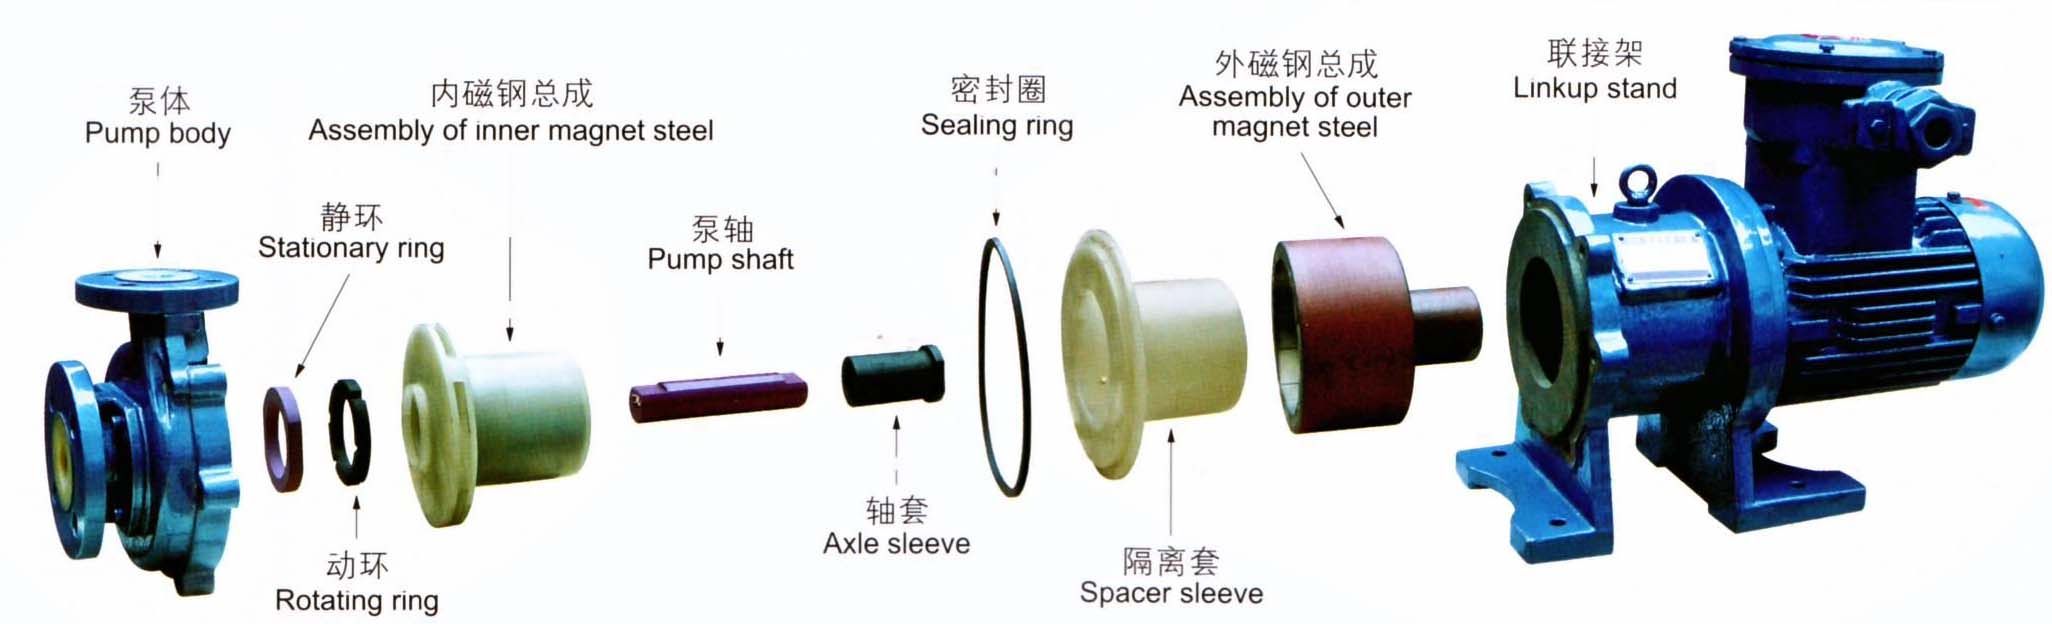 Self-priming Magnetic Pump